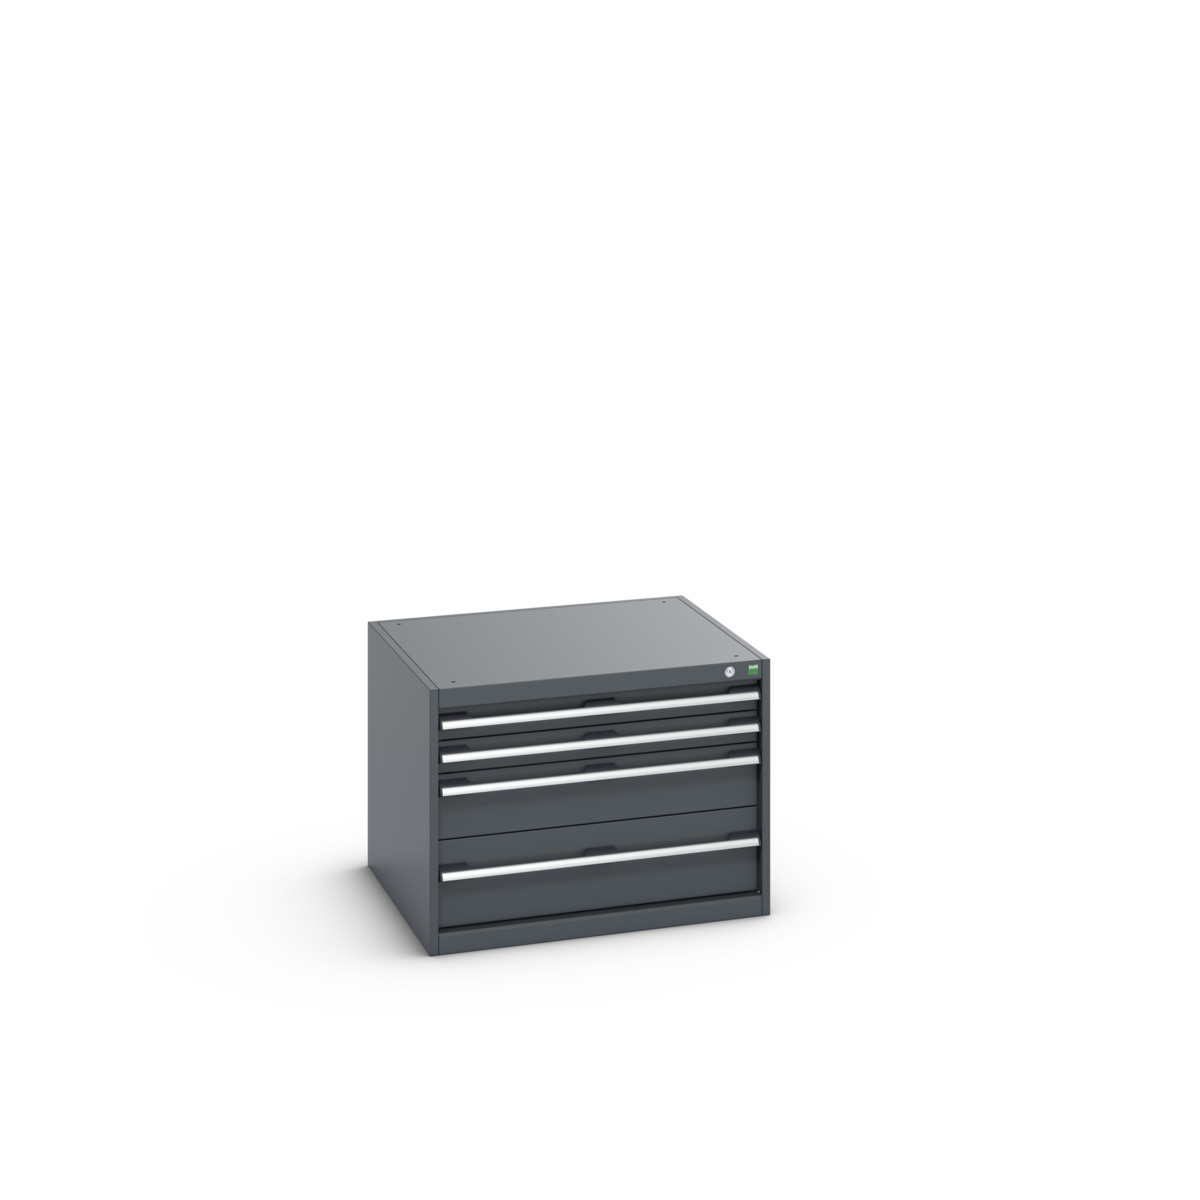 40028091.77V - cubio drawer cabinet